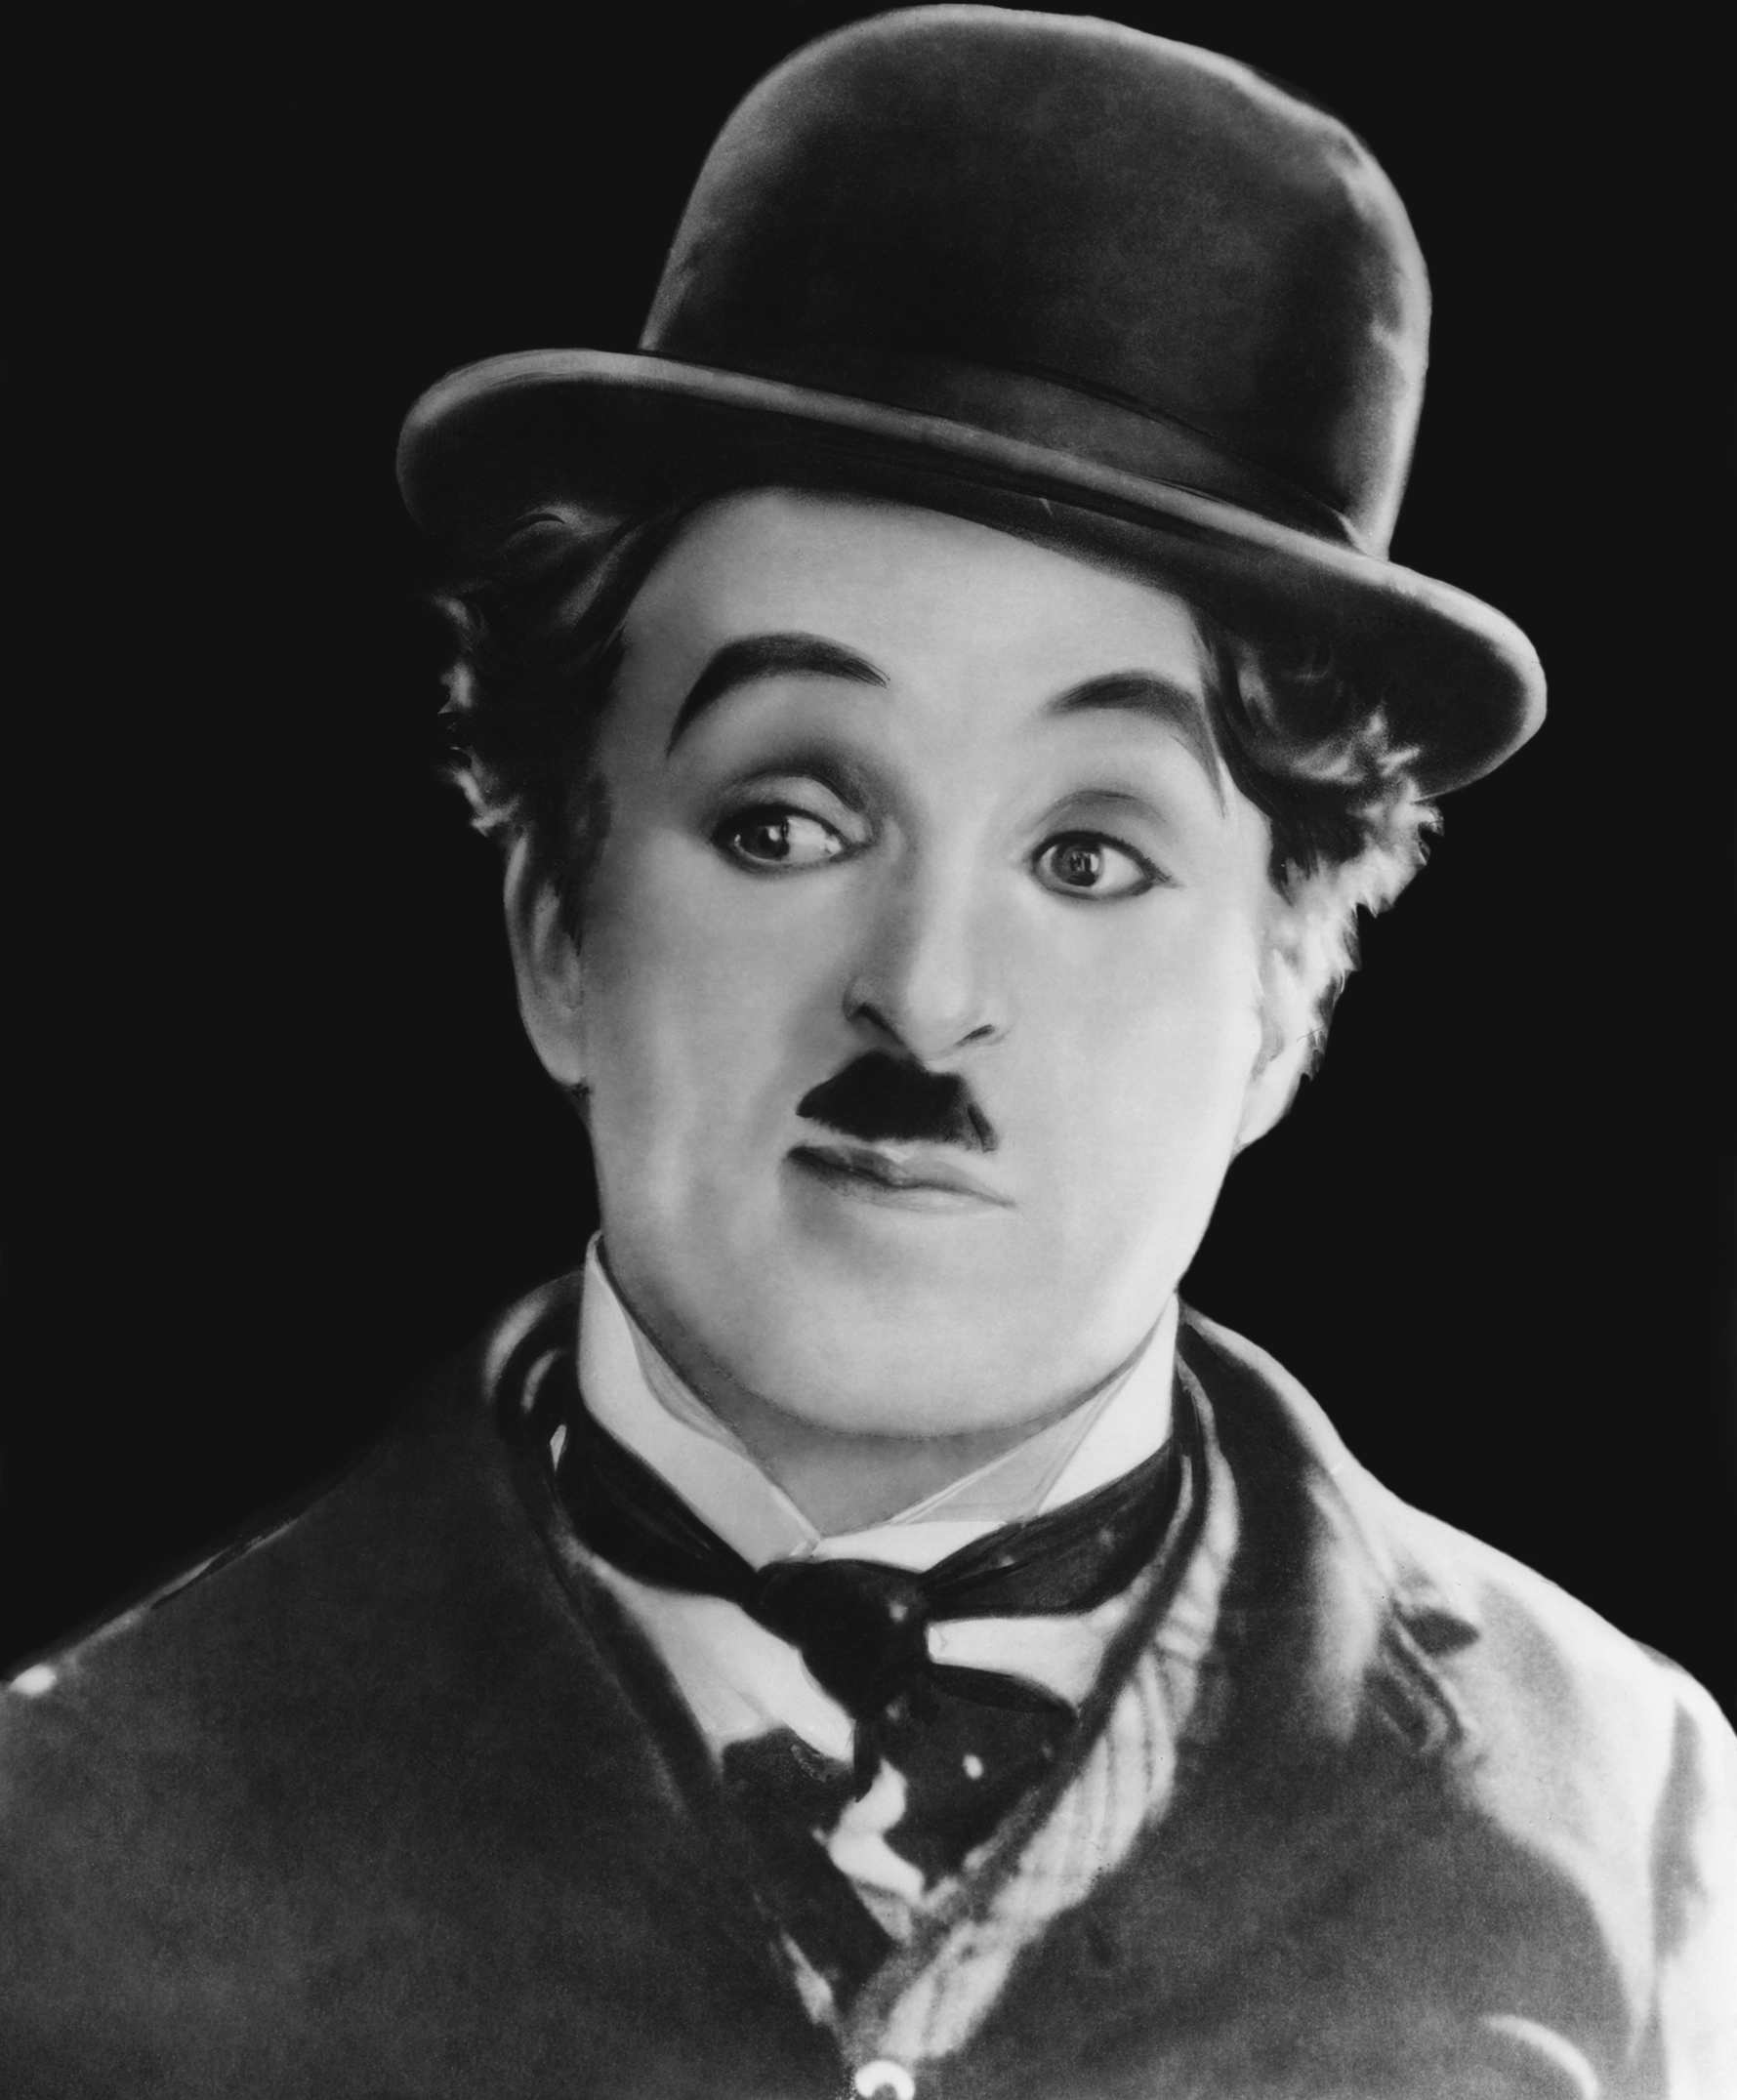 Ποιος “Charlie Chaplin” είναι ο καλύτερος;